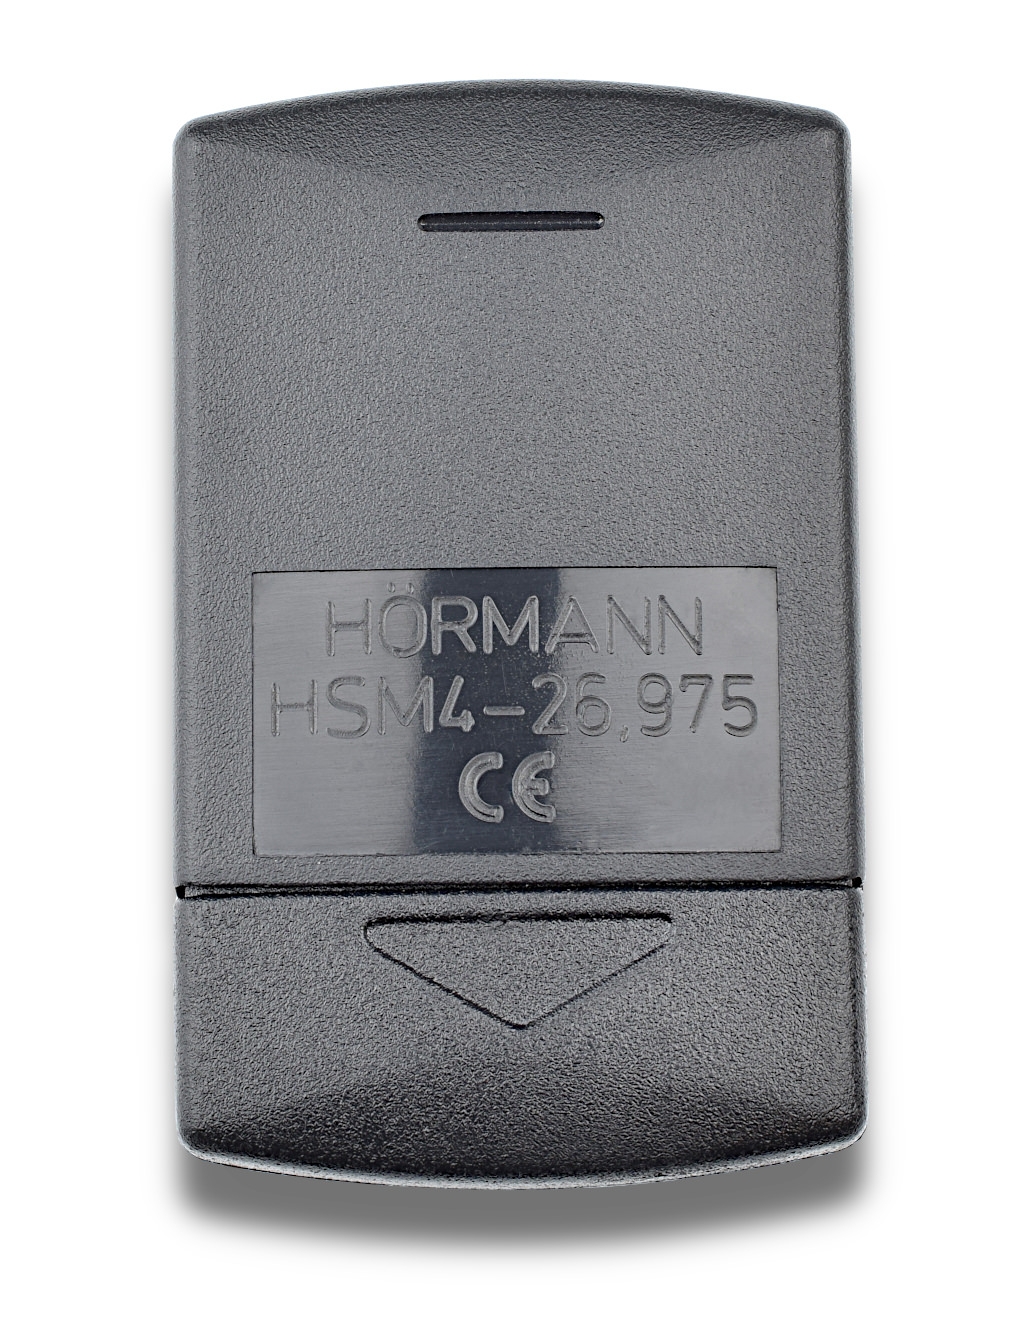 Handsender Hörmann Typ HSM4 grüne Tasten 26,995 MHz - Hörmann